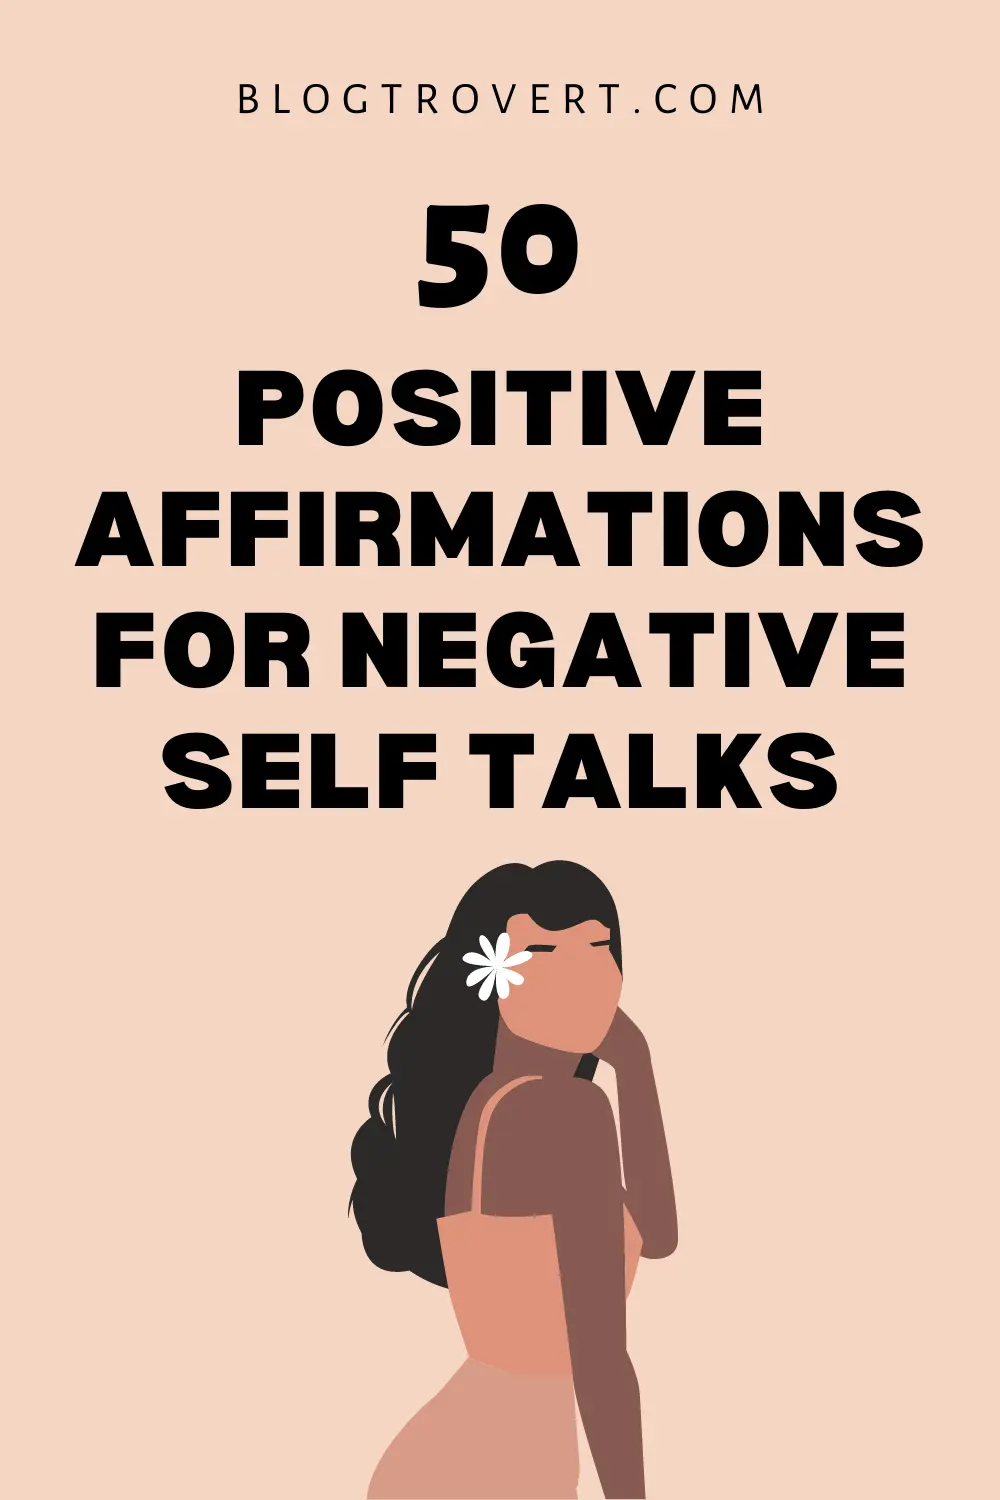 50 positive affirmations for negative self-talks